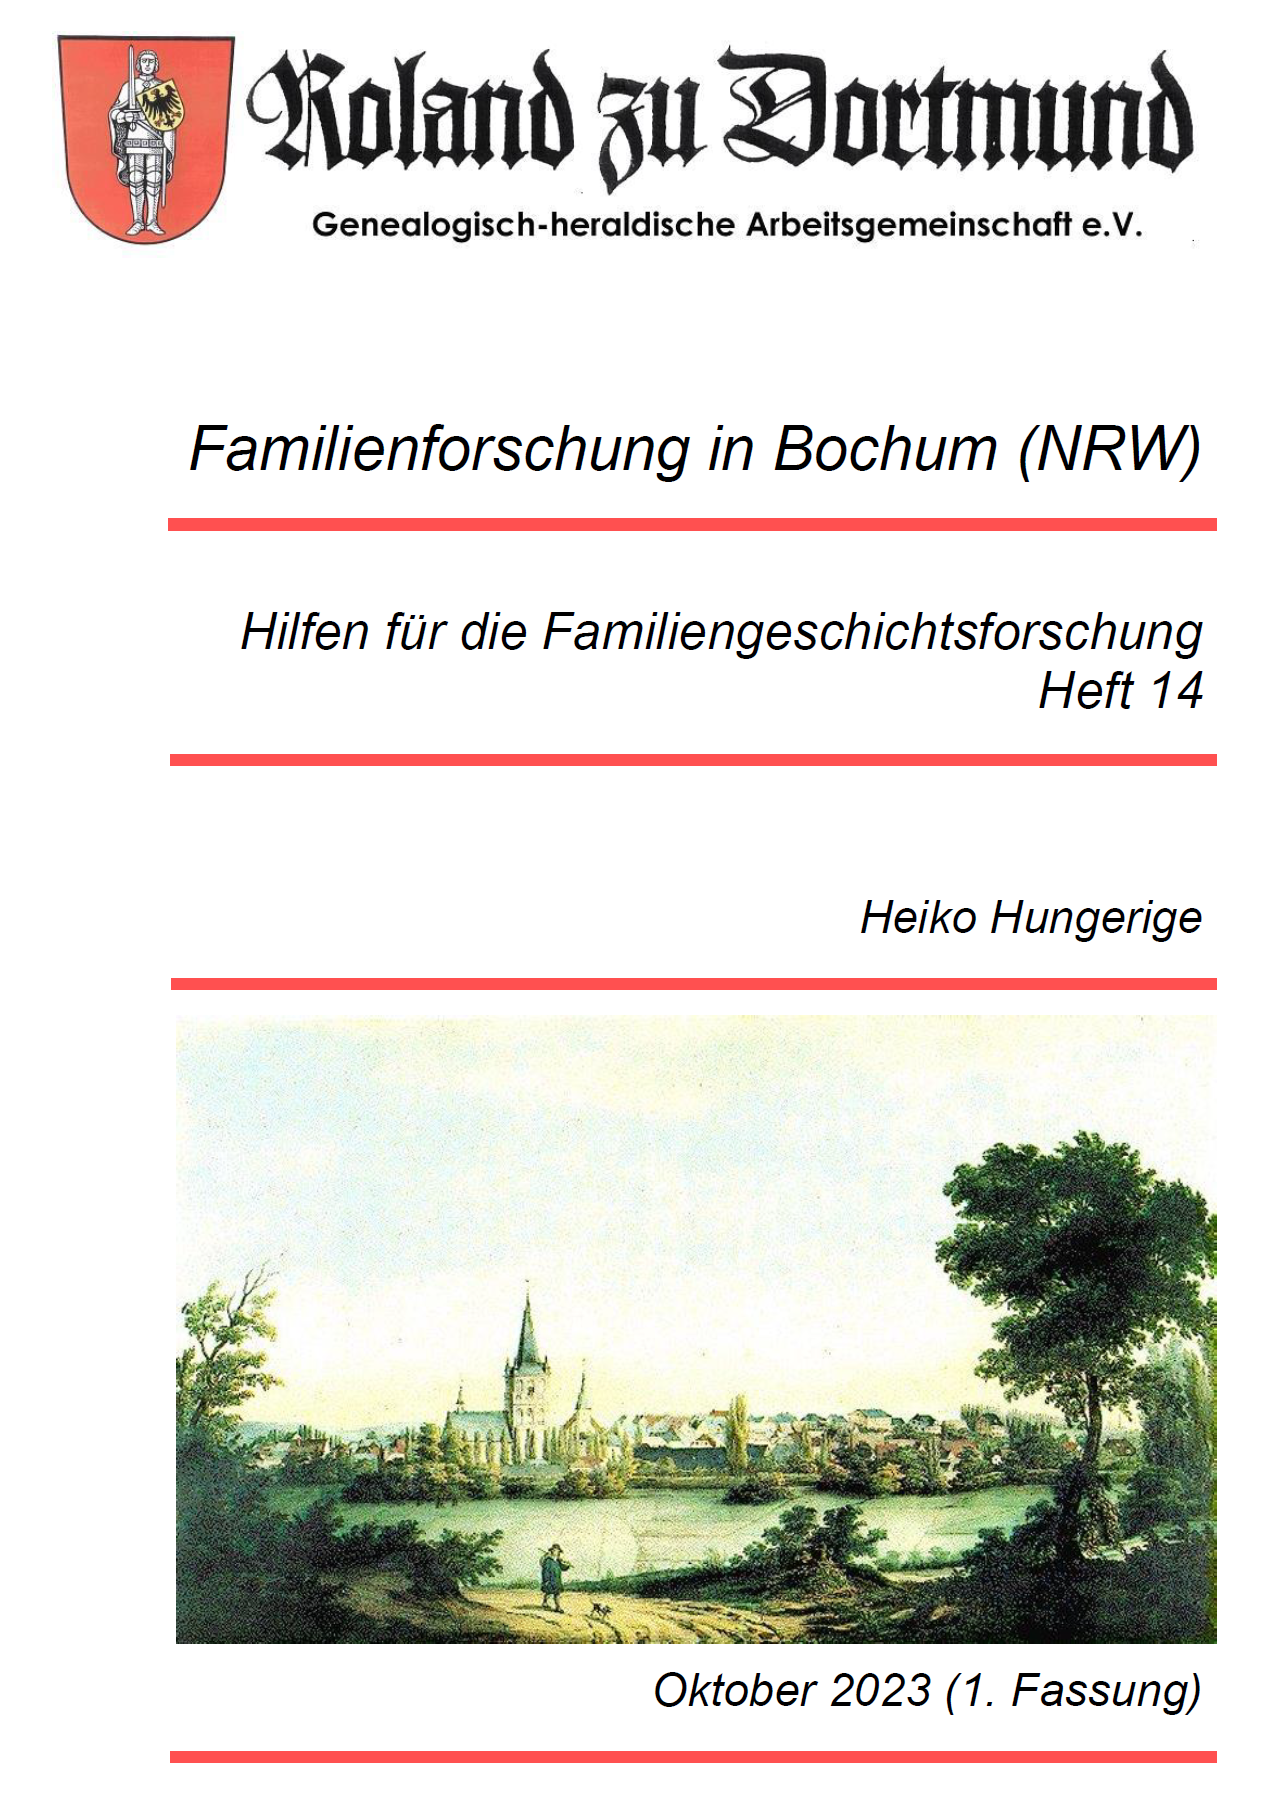 RzD-Forschungshilfen Heft 14 - Familienforschung in Bochum